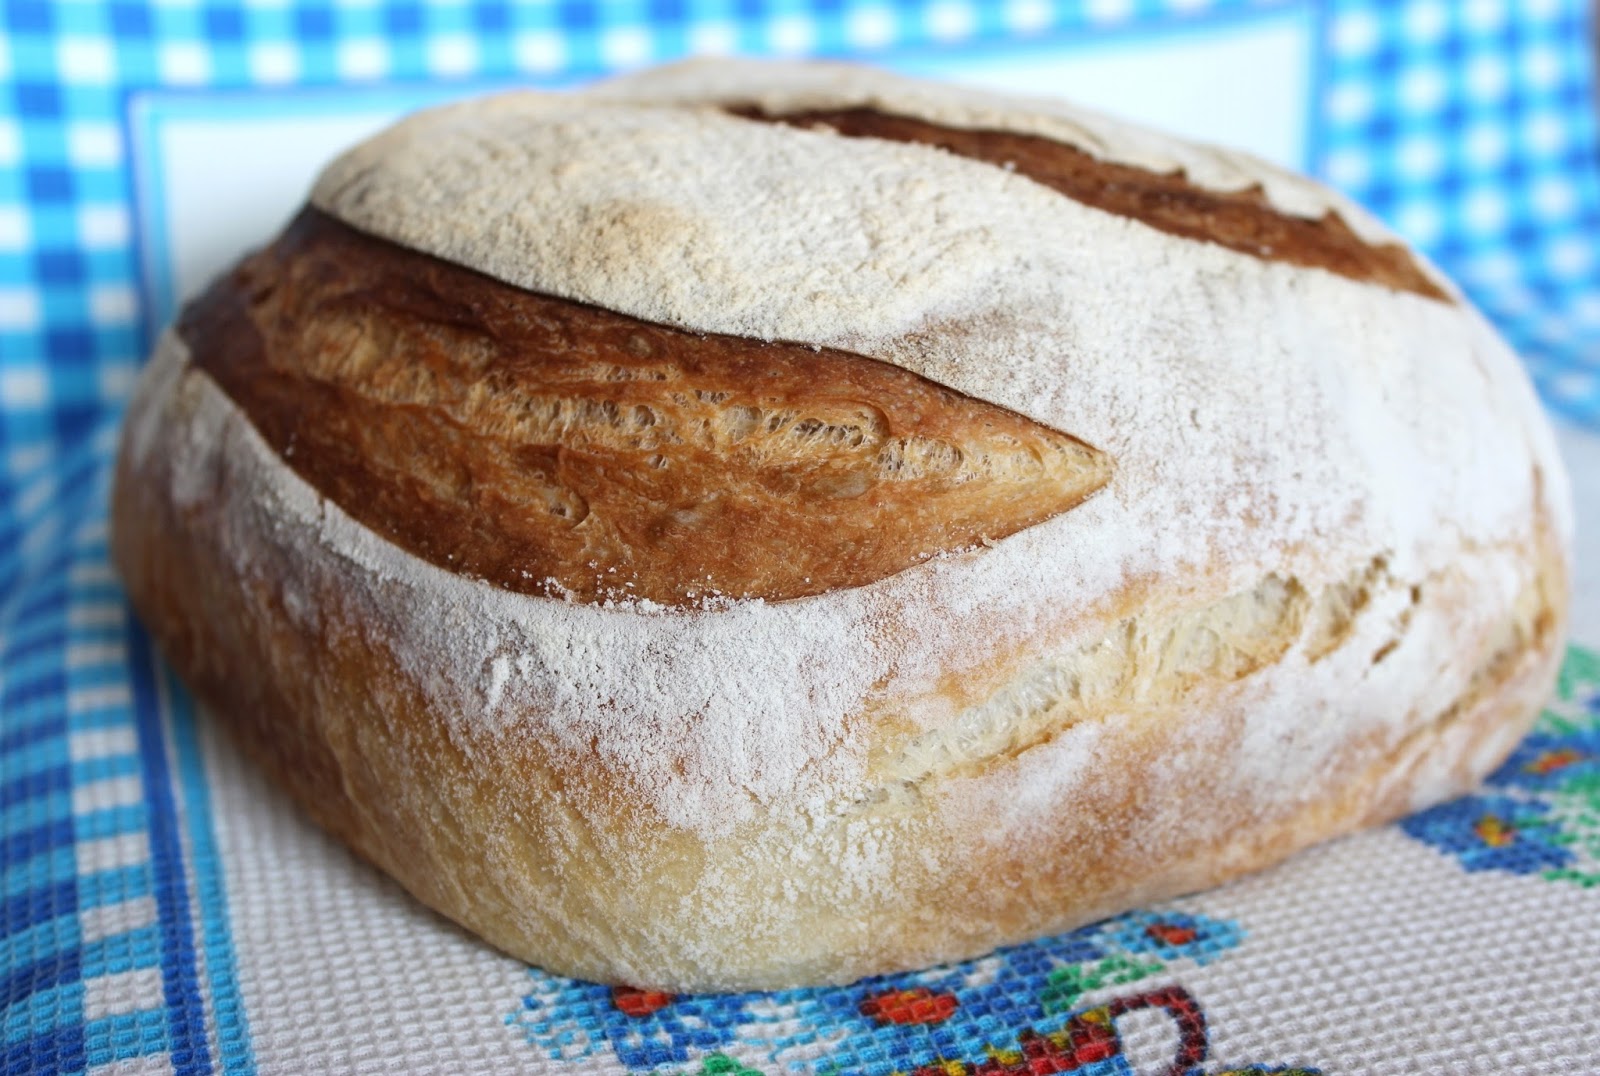 Домашний бездрожжевой хлеб в духовке на закваске. Французская булка на закваске. Бездрожжевой хлеб на закваске. Сэндвичи на хлеб на закваске. Булочка лента французская на закваске.